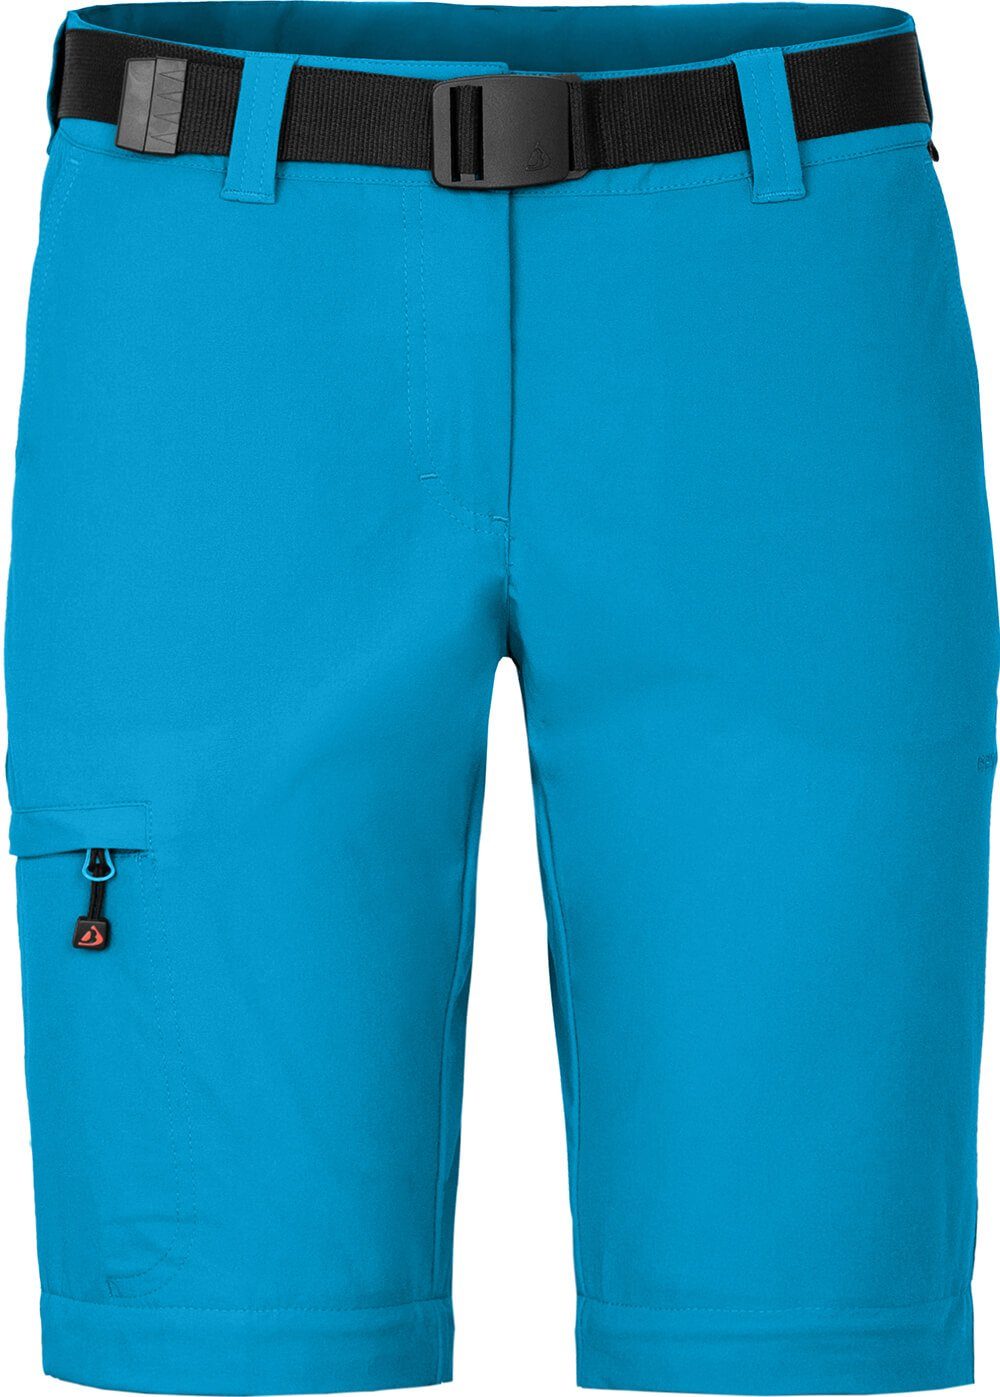 Bergson Zip-off-Hose Damen Zipp-Off vielseitig, Wanderhose, Kurzgrößen, pflegeleicht, BENNETT Ozean (slim) blau